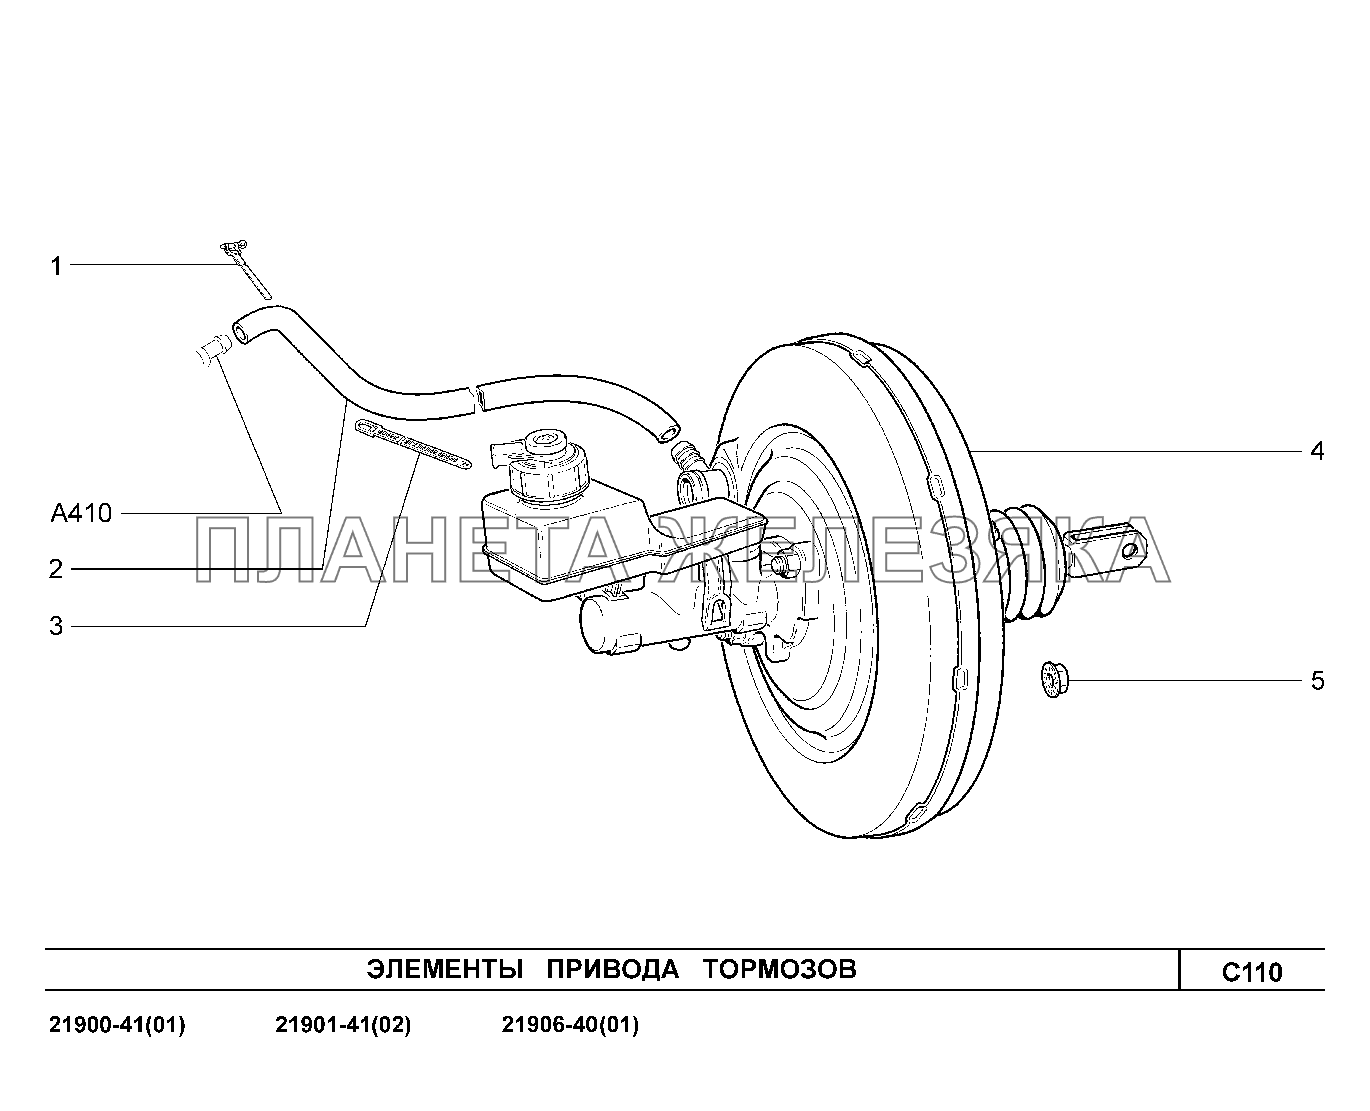 C110. Элементы привода тормозов Lada Granta-2190